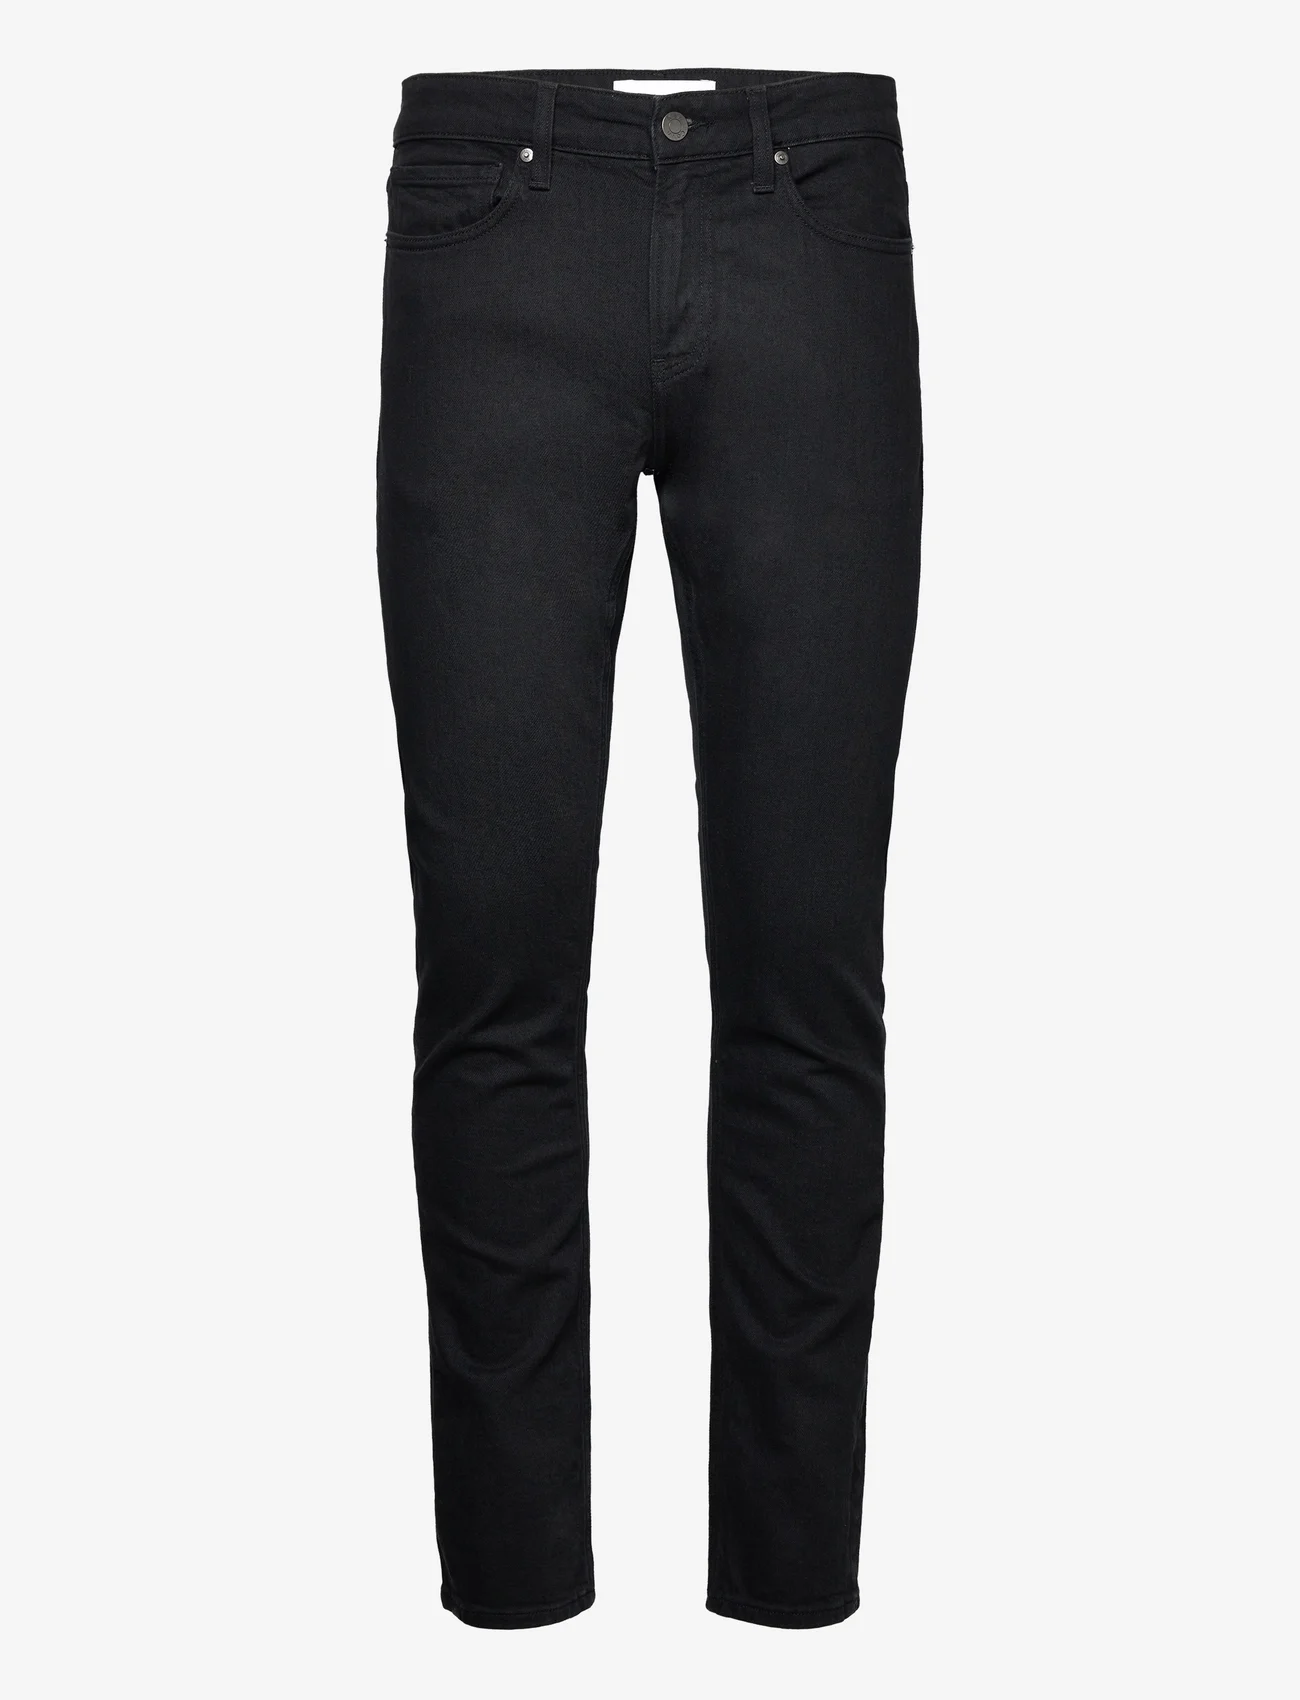 Calvin Klein - SLIM FIT RINSE BLACK - slim fit jeans - denim black - 0